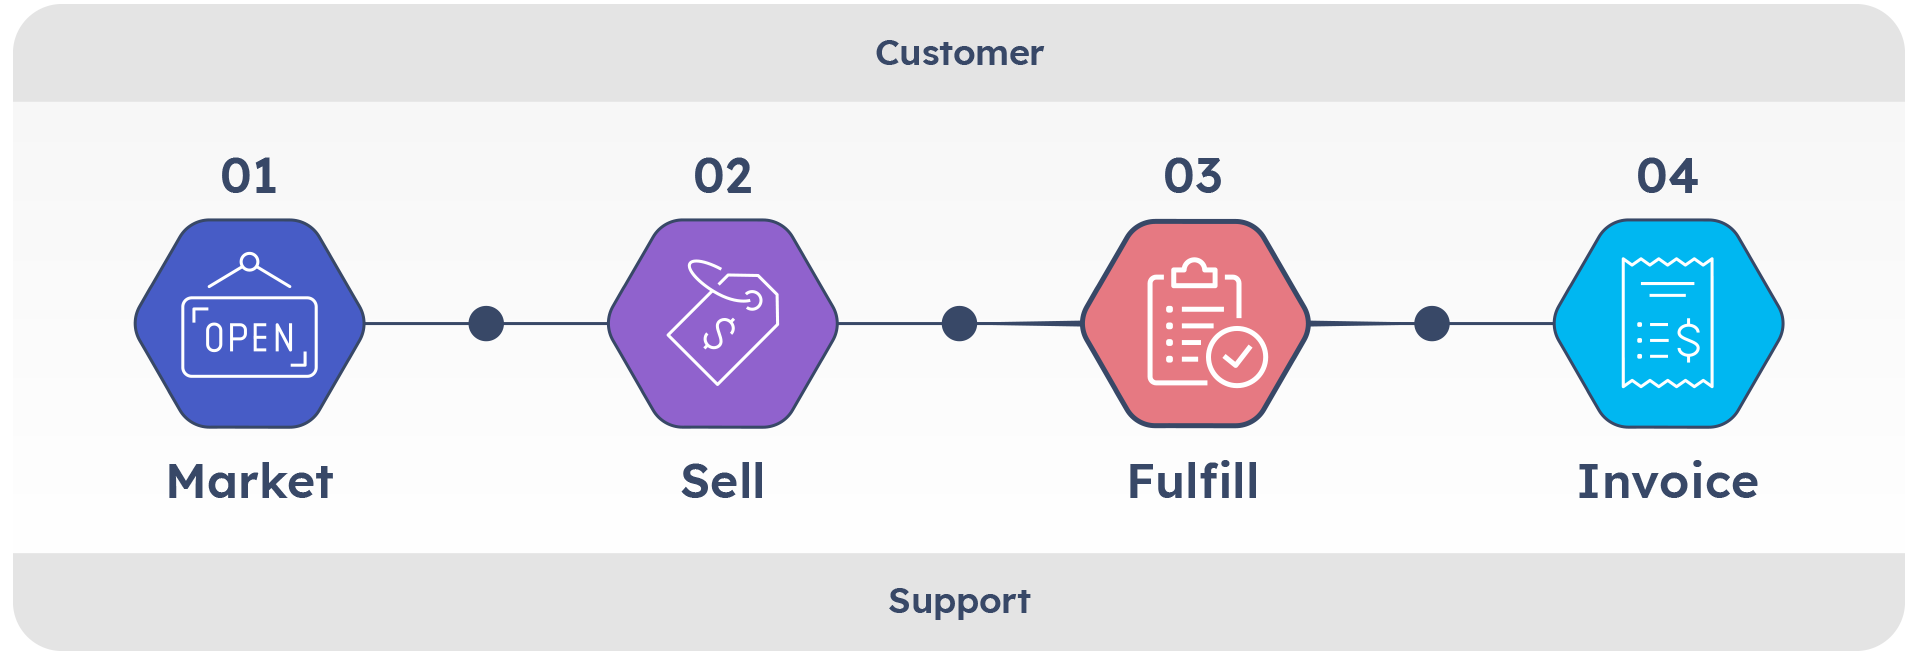 Customer value stream diagram